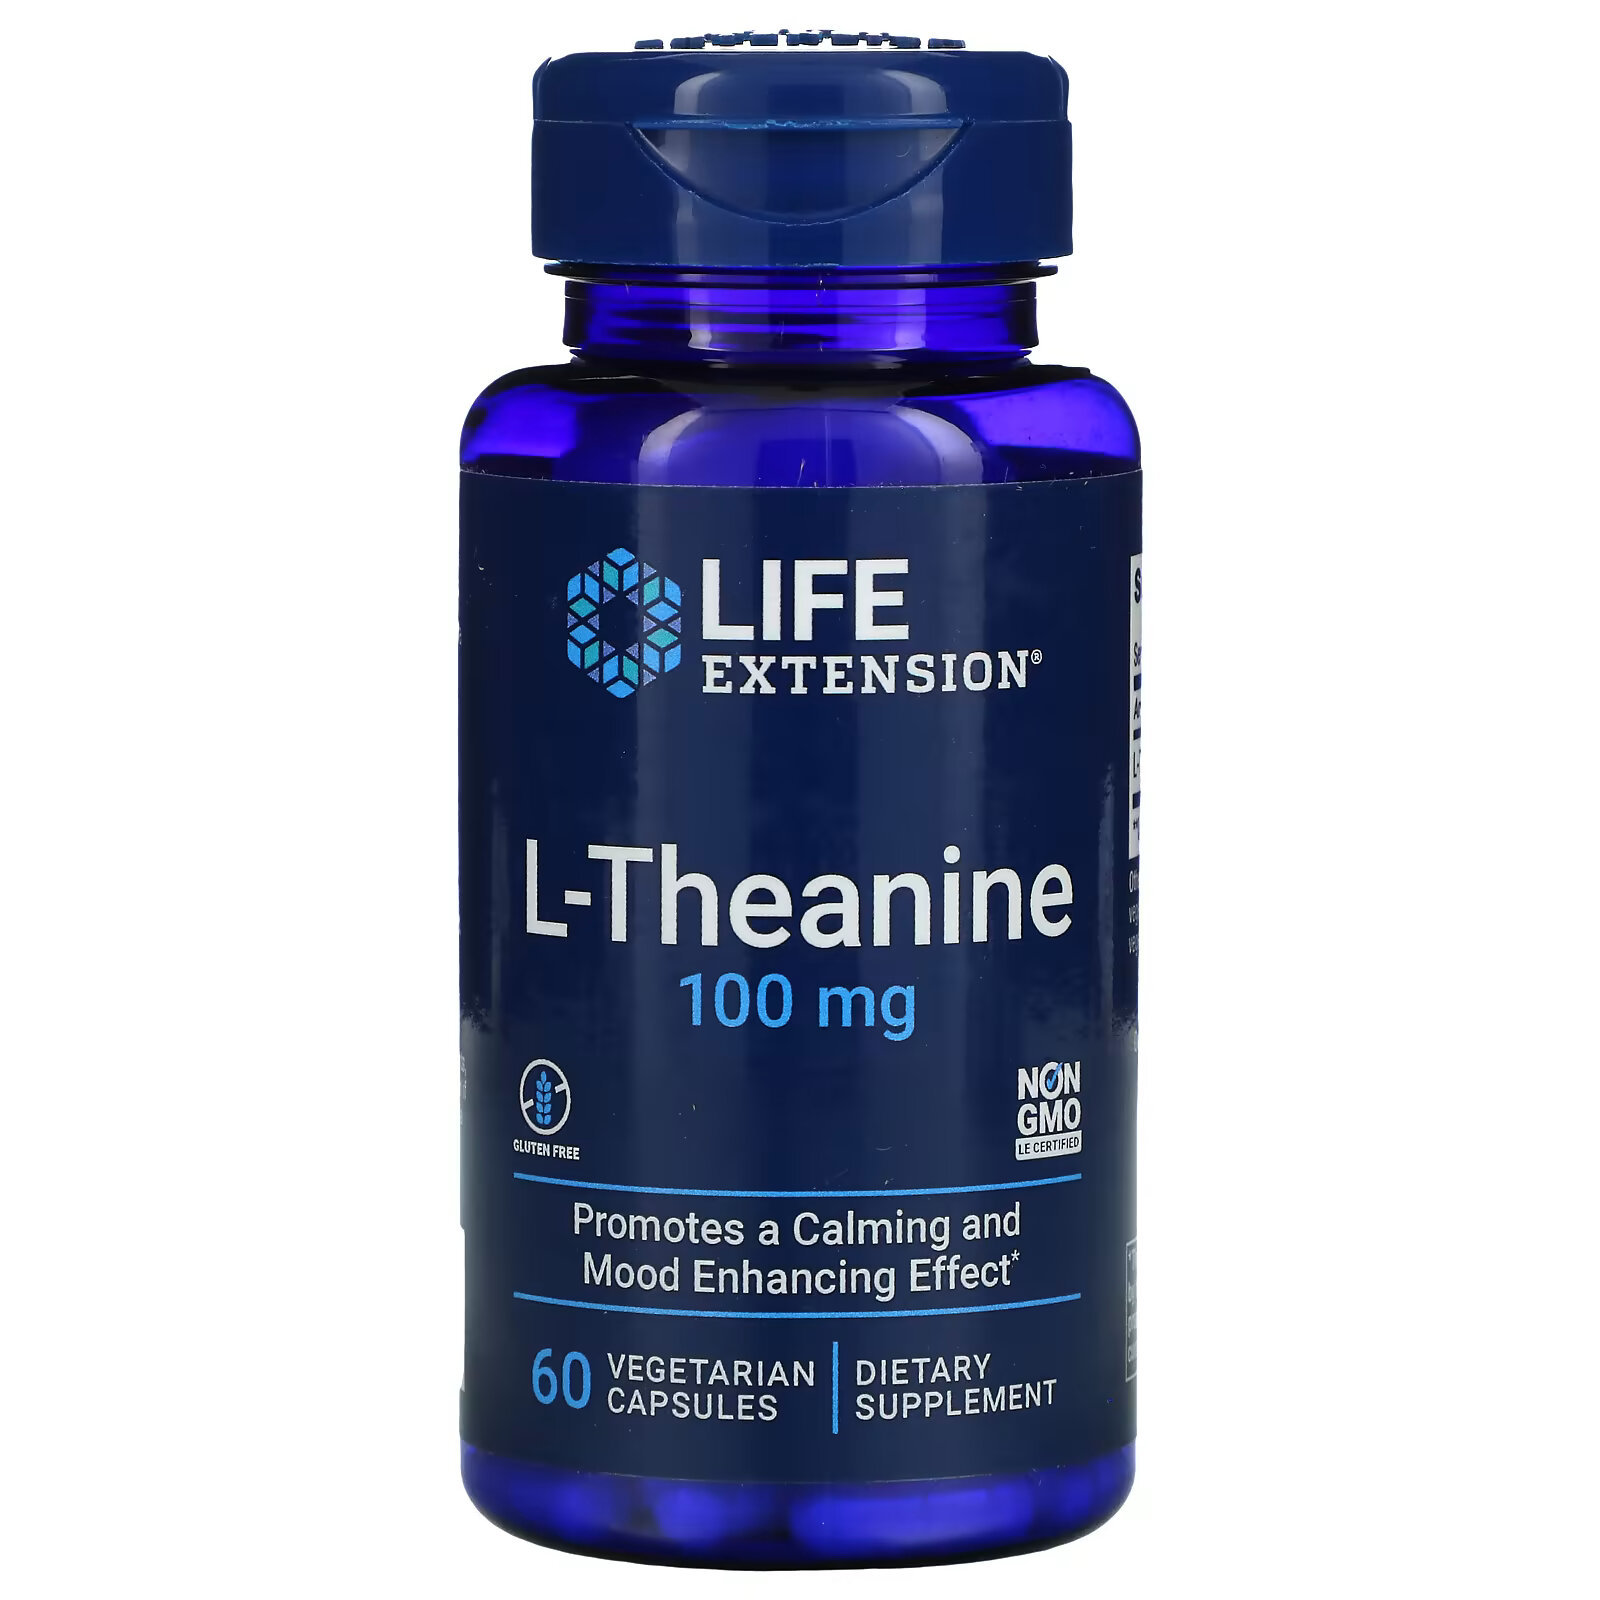 Life Extension, L-теанин, 100 мг, 60 растительных капсул ингибитор 5 lox с apresflex 100 мг 60 капсул life extension